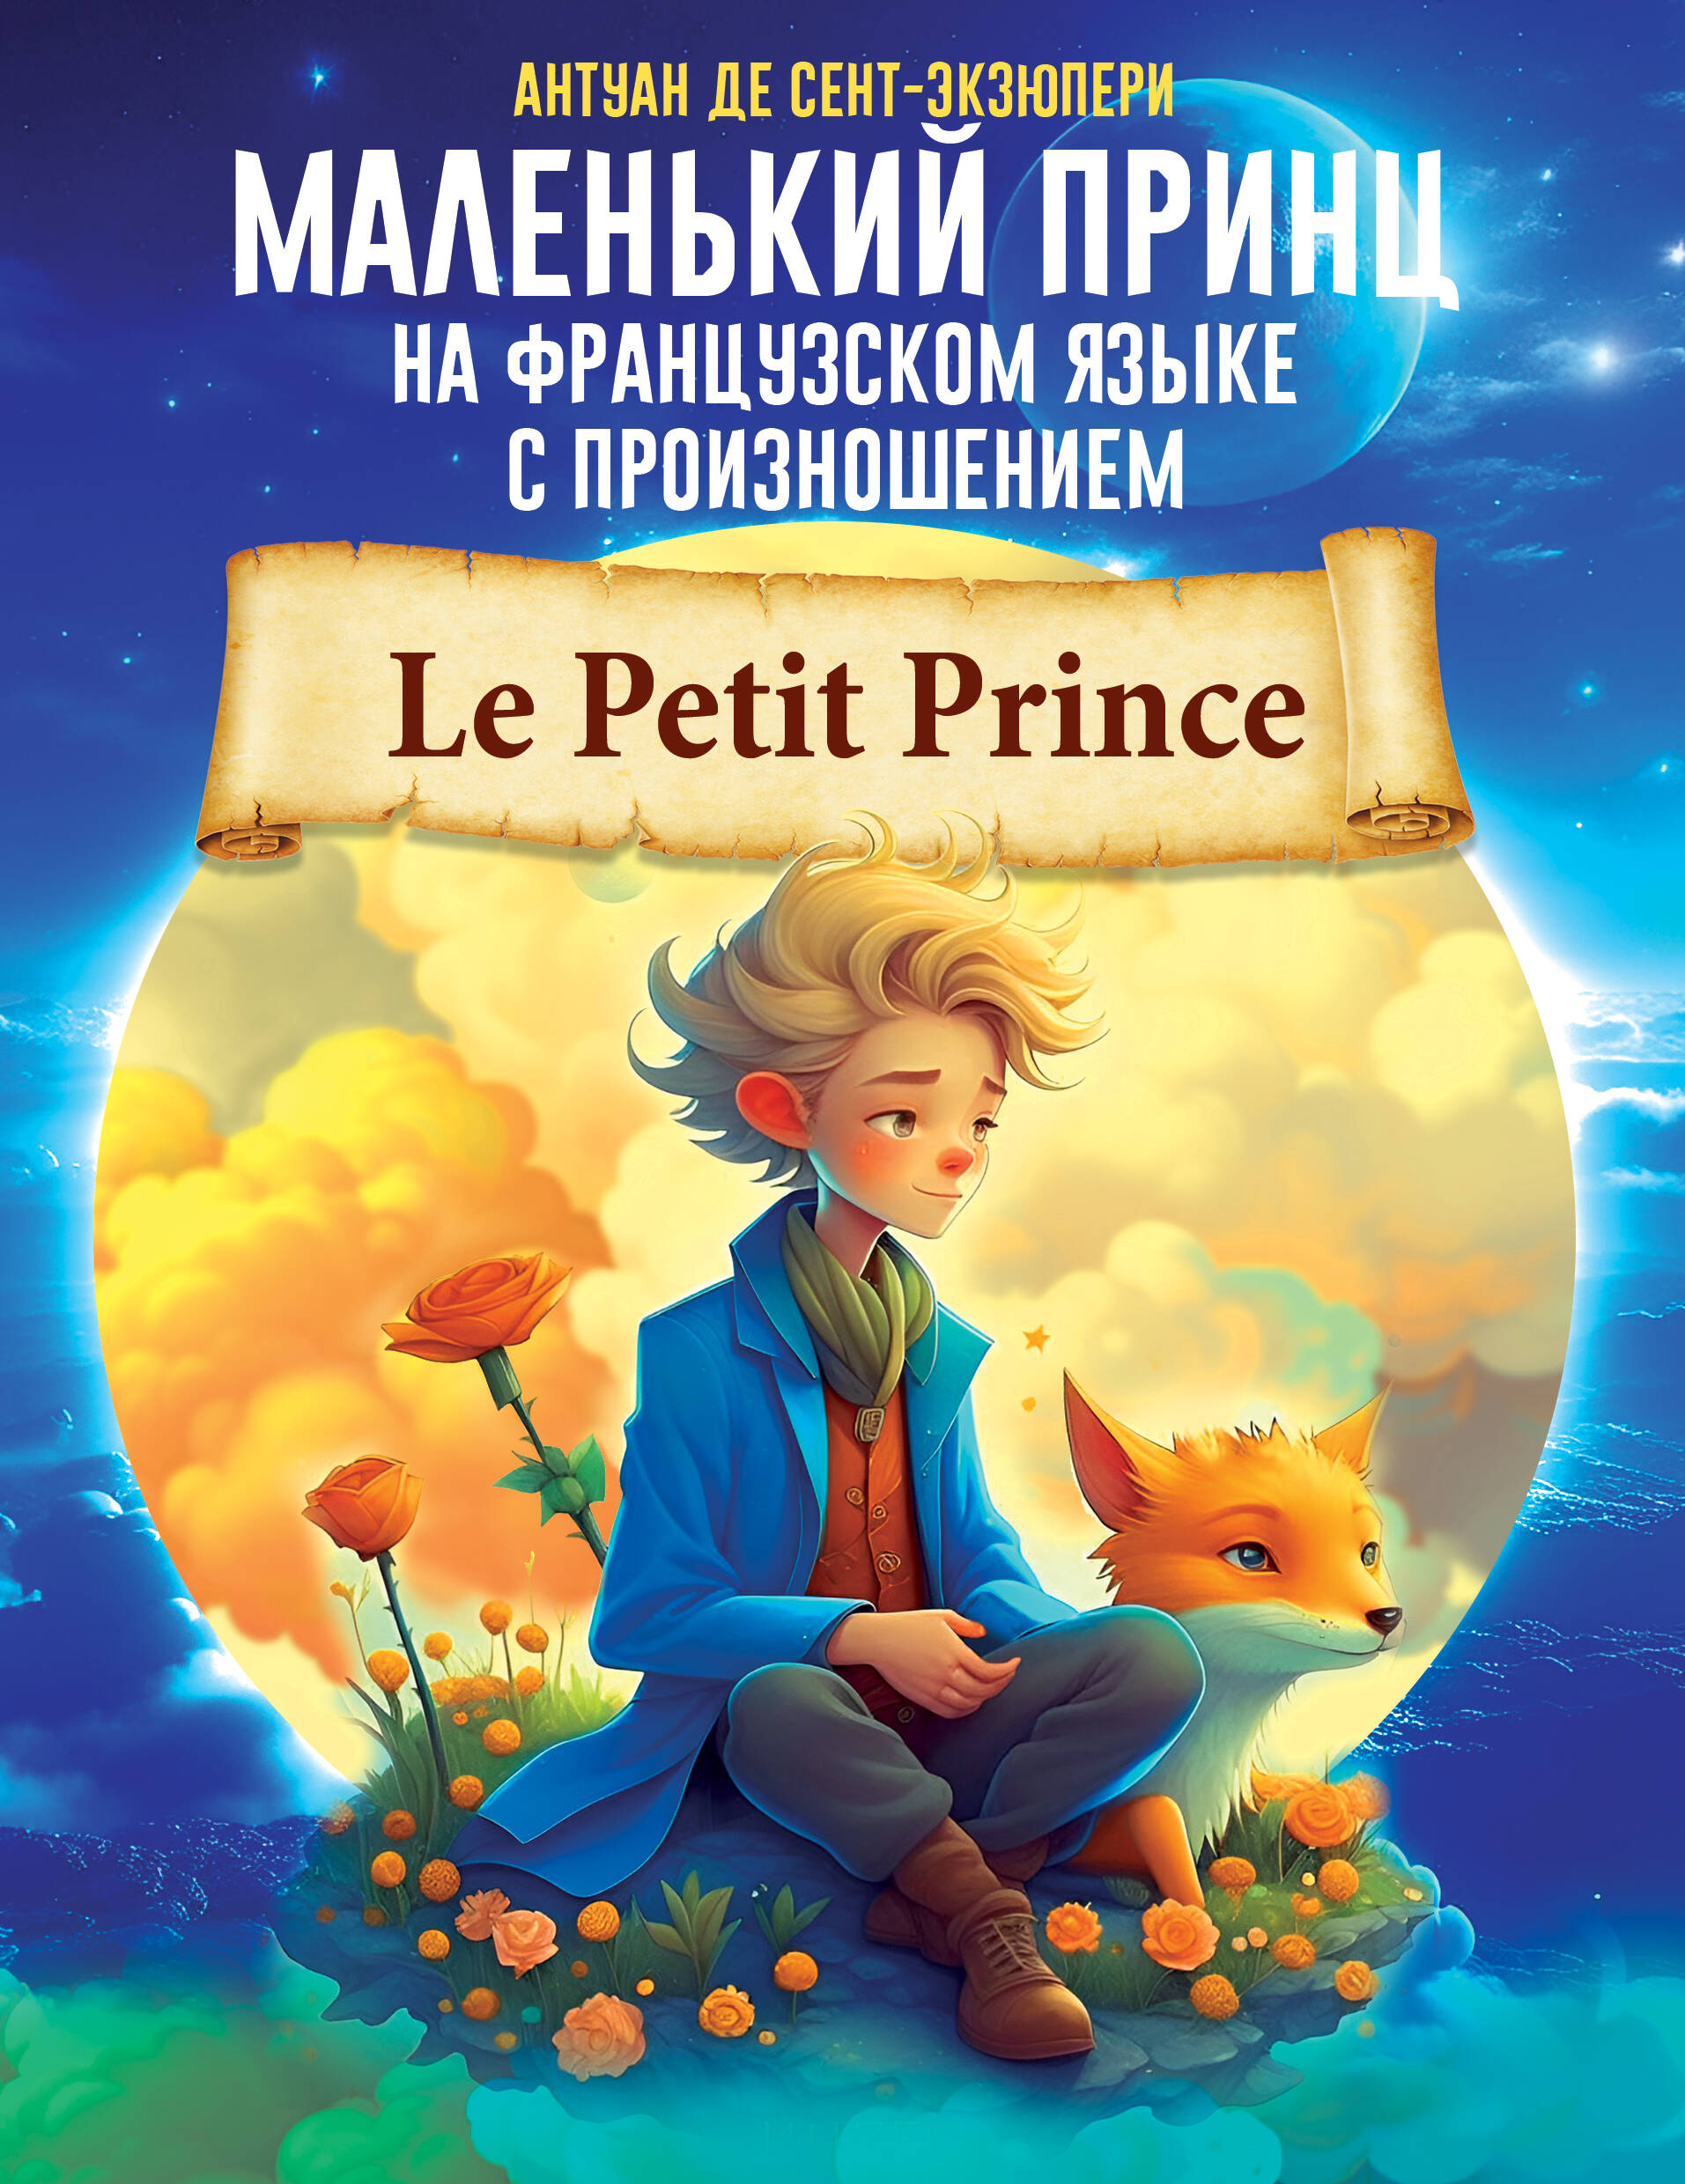 де сент экзюпери антуан маленький принц книга для чтения на французском языке де Сент-Экзюпери Антуан Маленький принц на французском языке с произношением